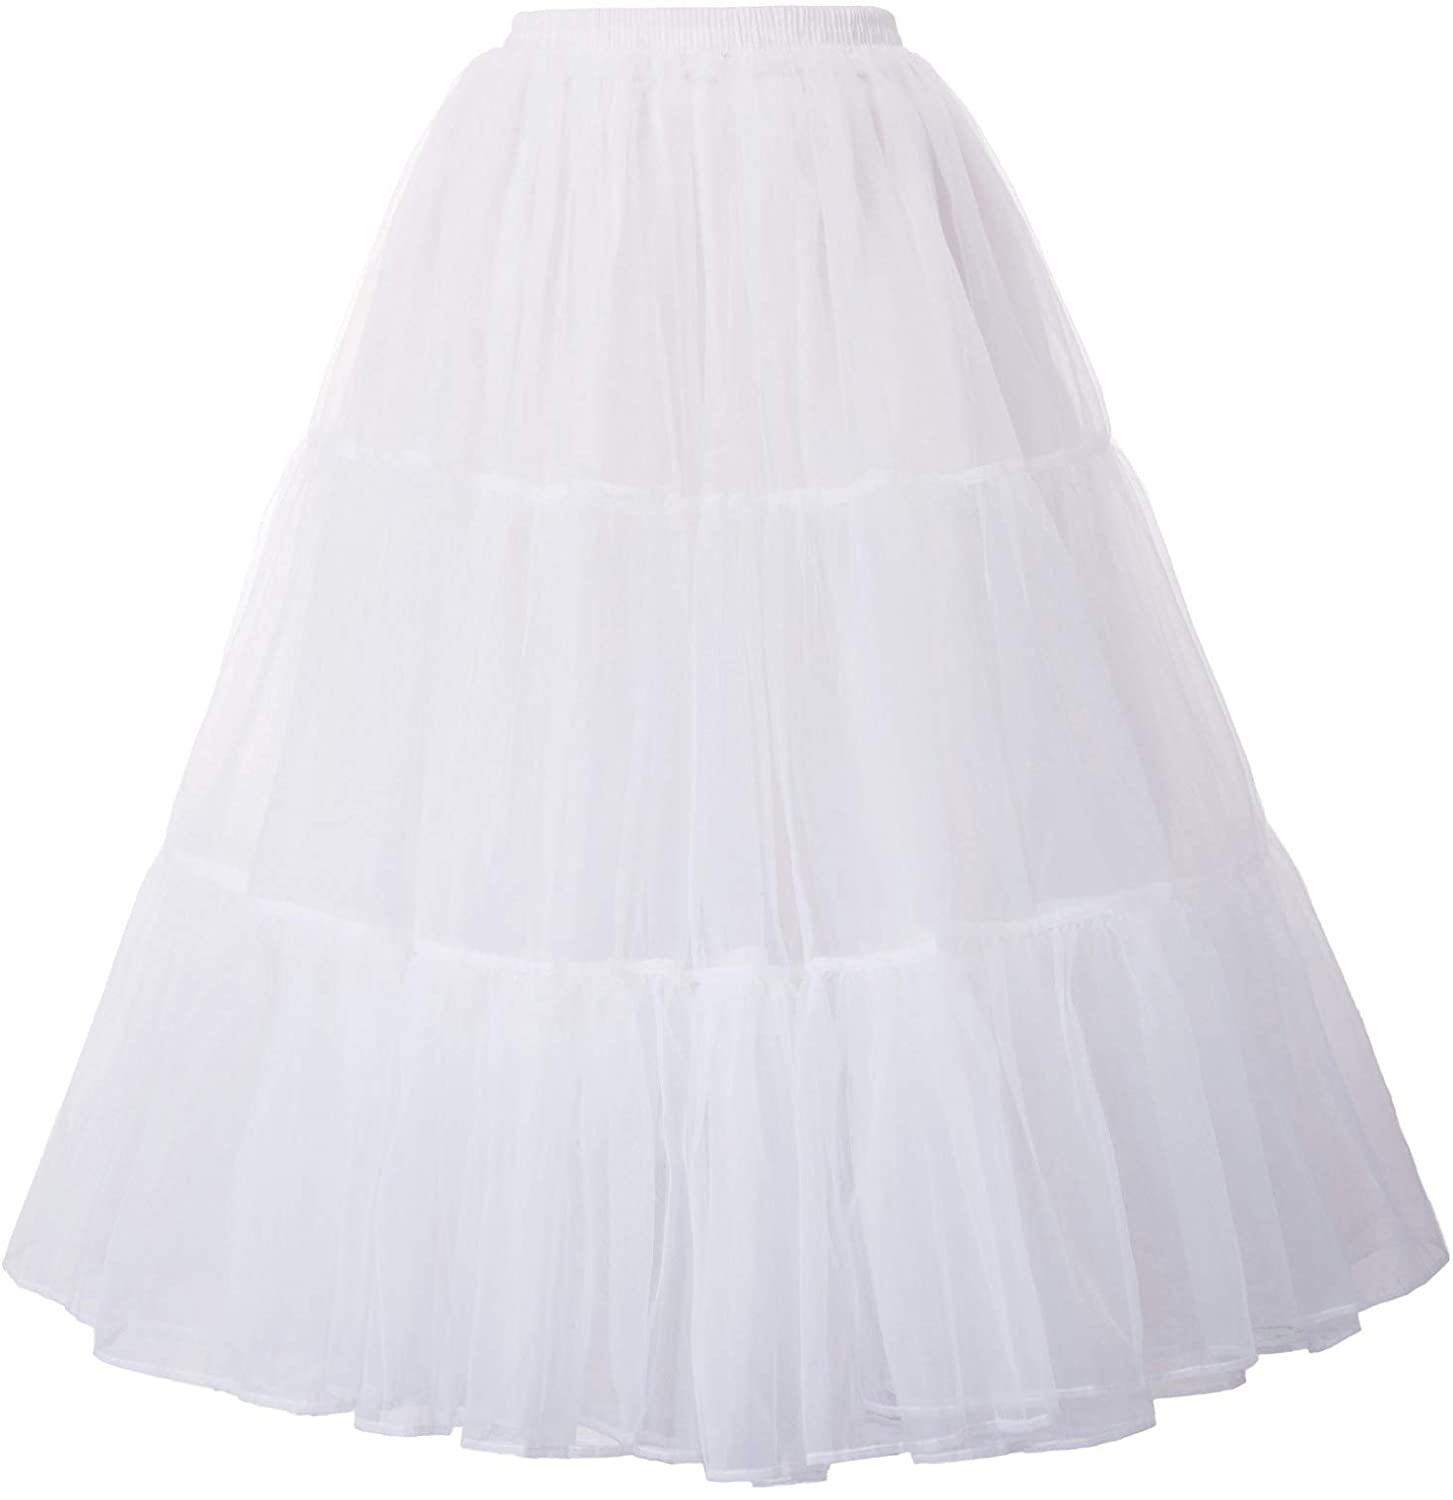 GRACE KARIN Women's Ankle Length Petticoats Skirts Wedding Half Slips Crinoline Underskirt 